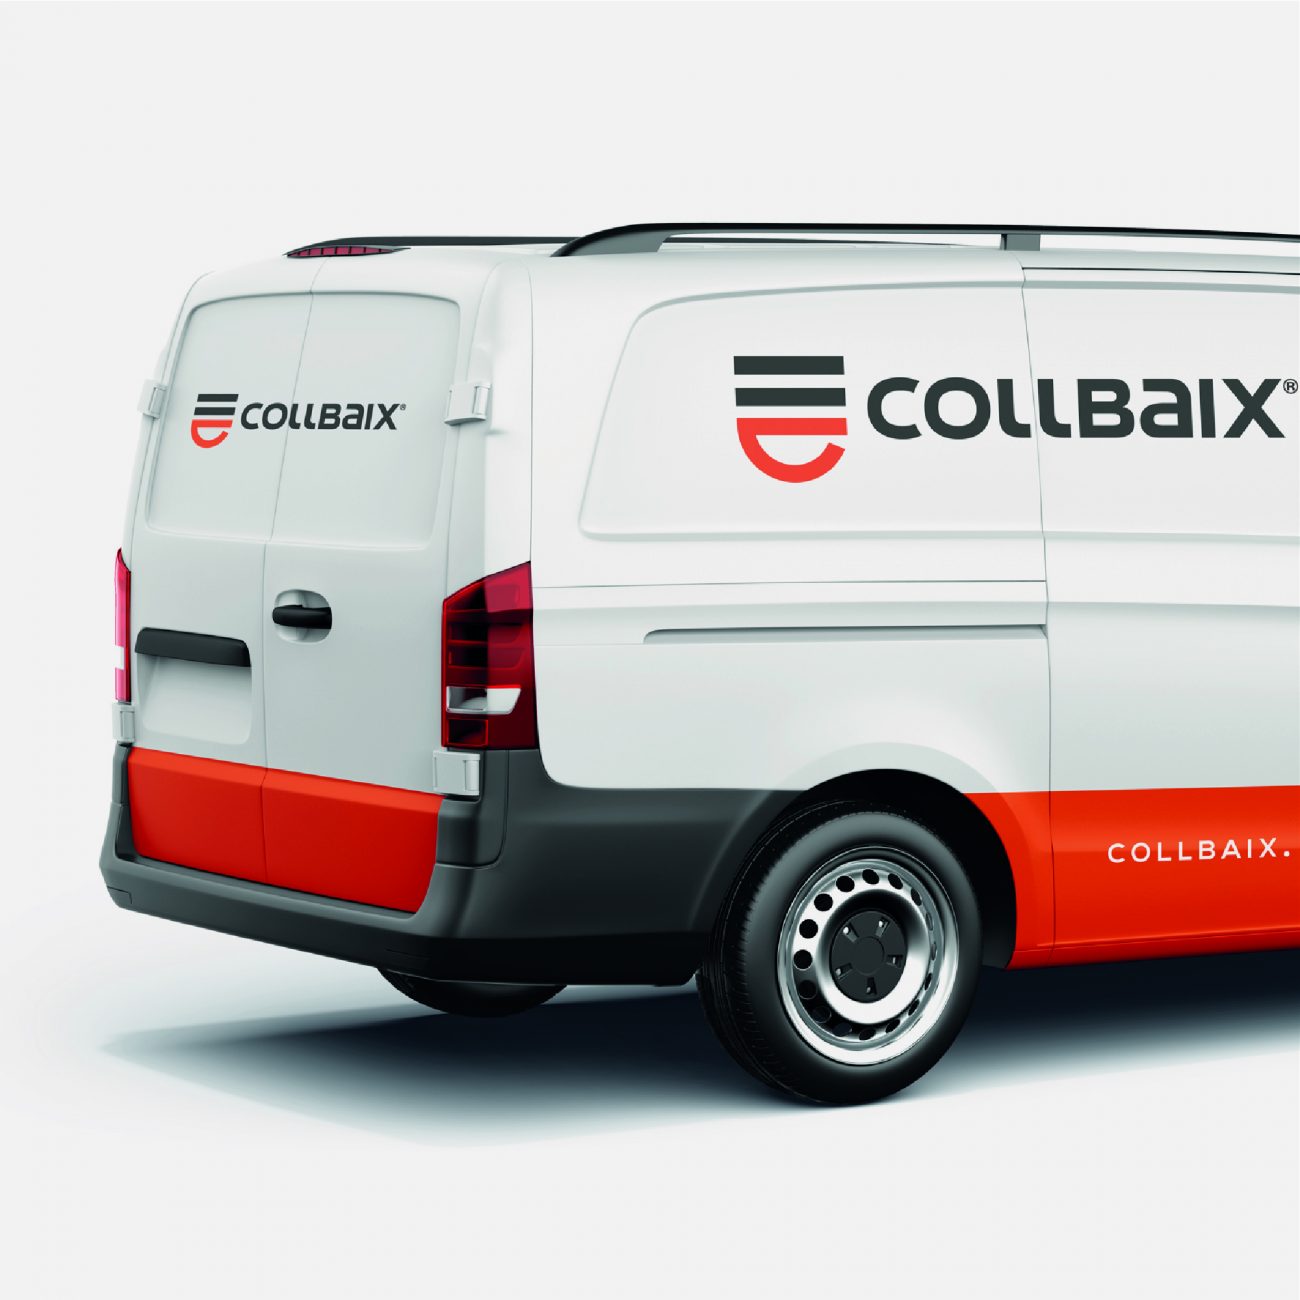 COLLBAIX_Vehicle